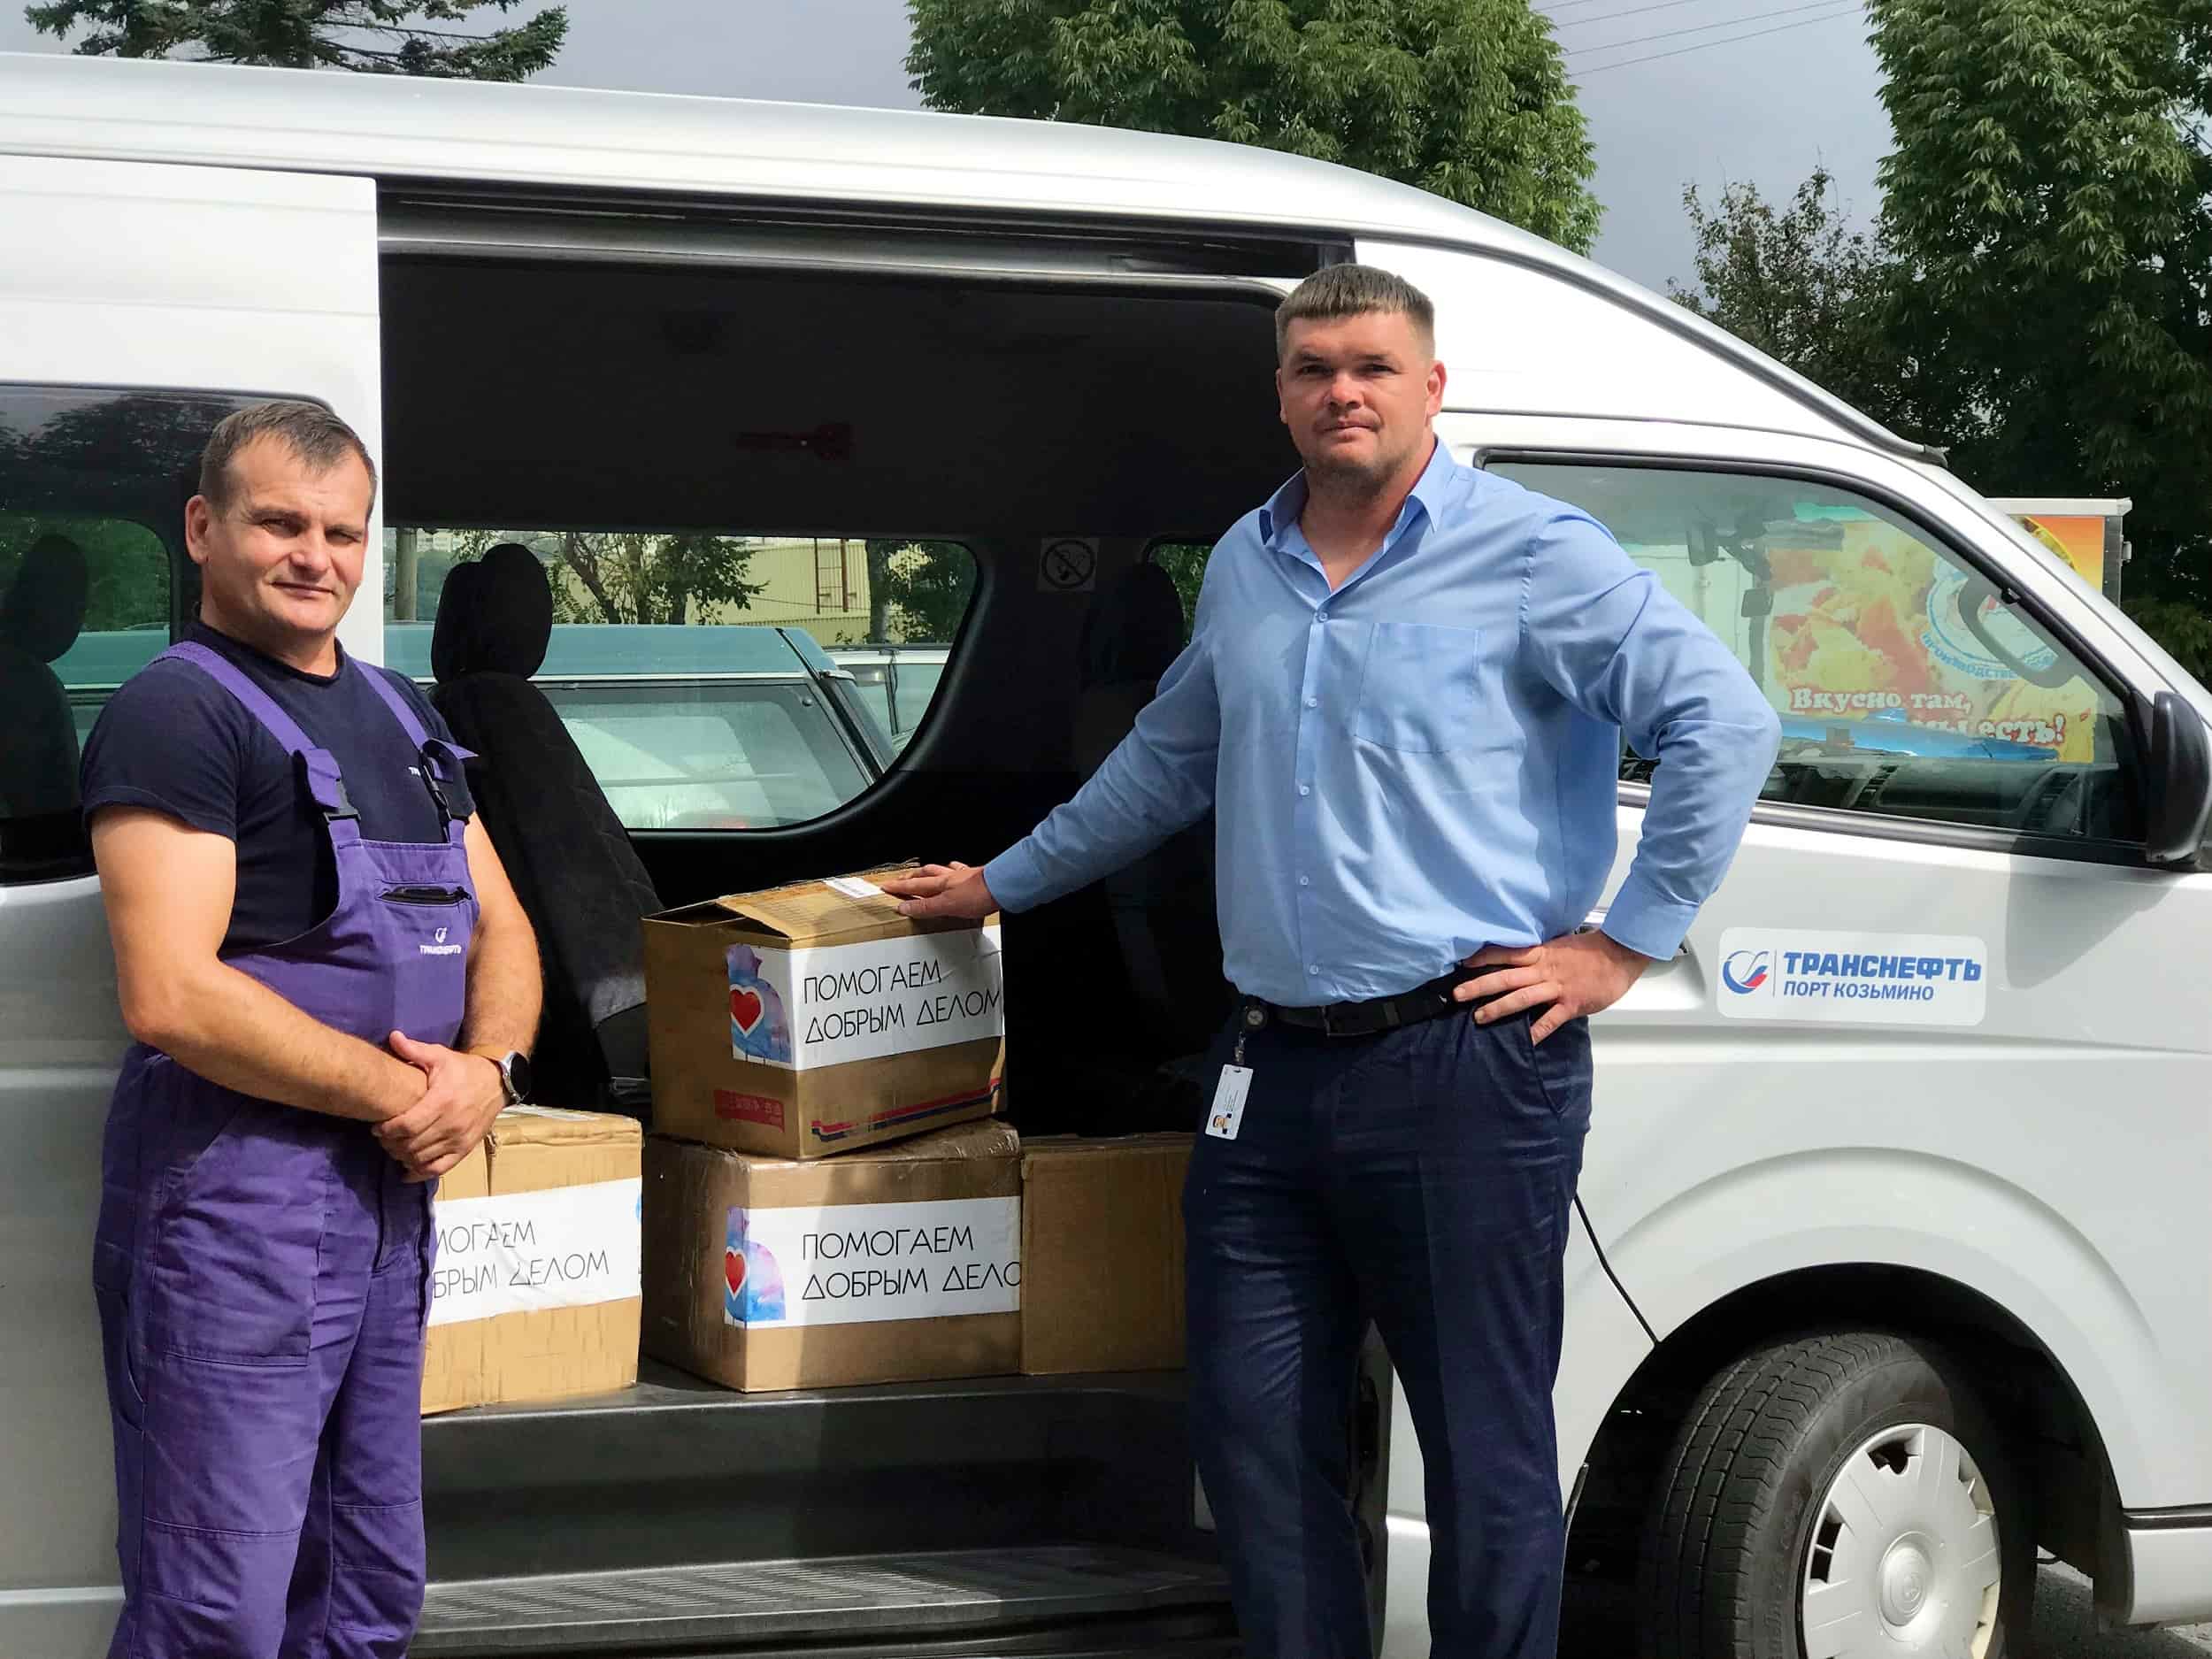 Сотрудники нефтепорта Козьмино направили гуманитарную помощь пострадавшим от наводнения в Приморье